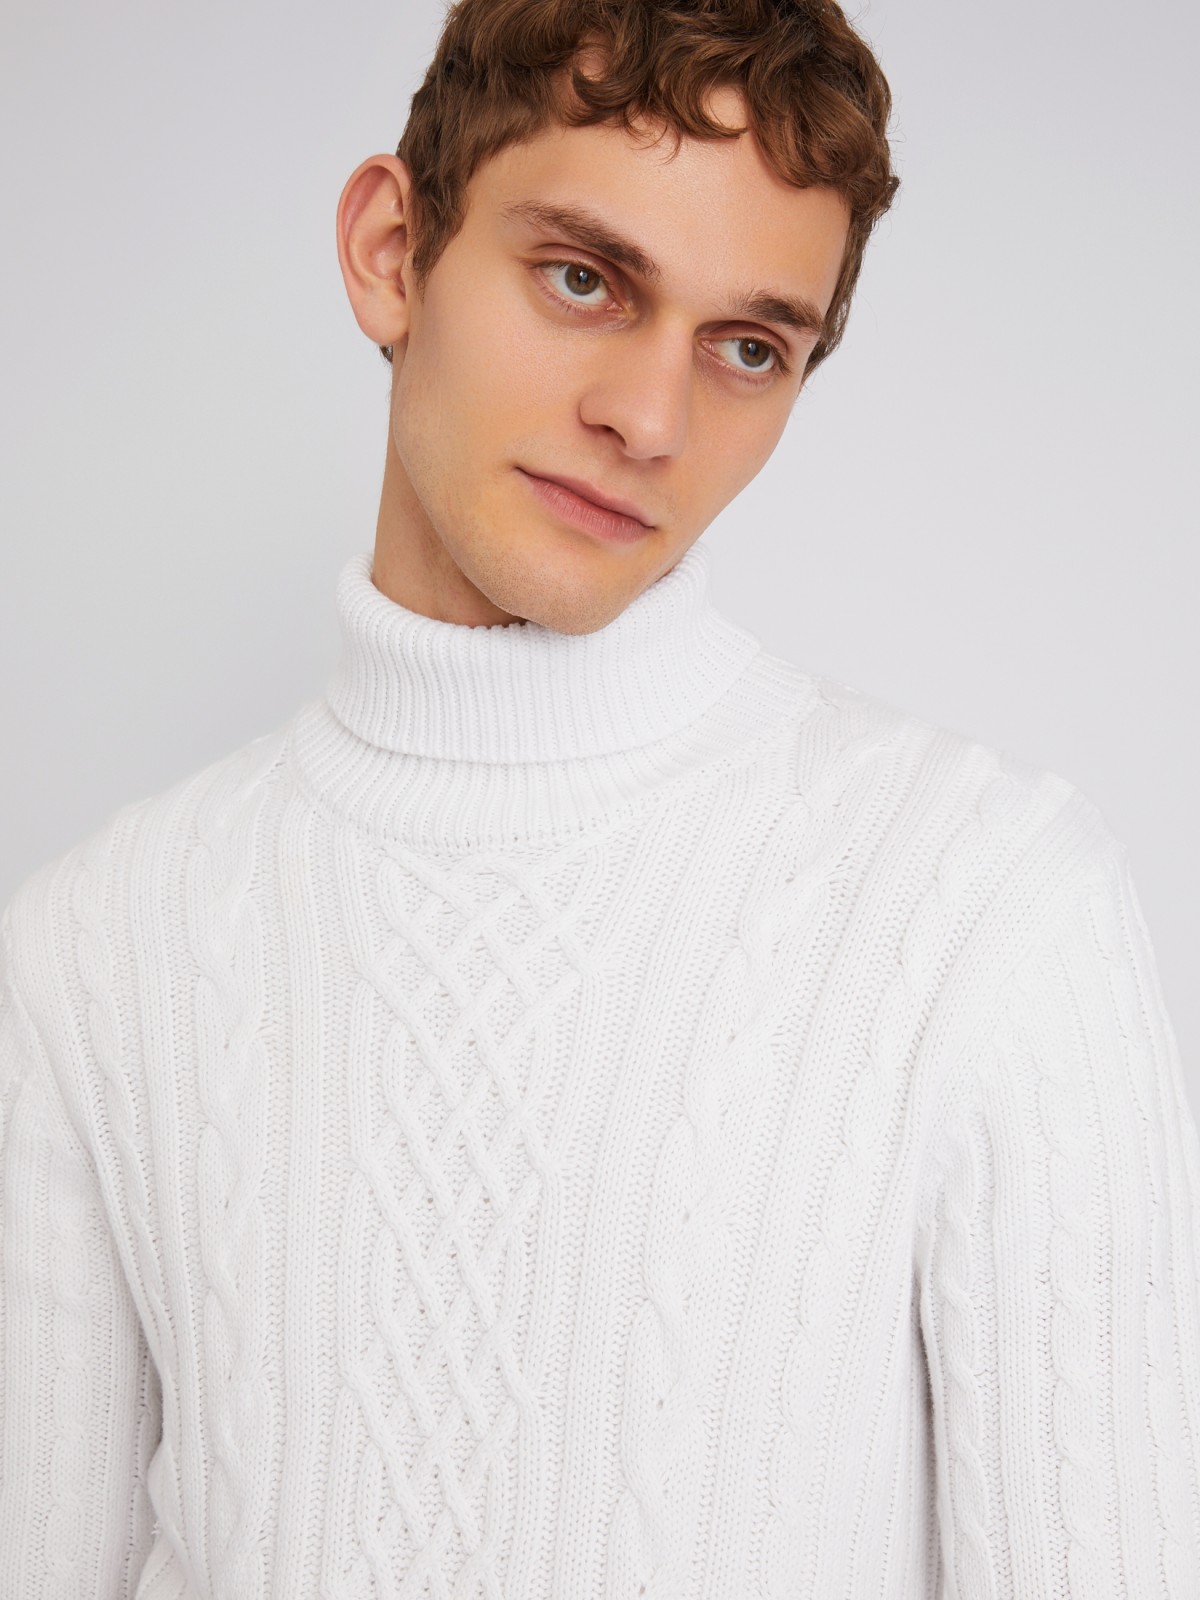 Вязаный свитер с фактурным узором косы zolla 013446165073, цвет молоко, размер S - фото 4